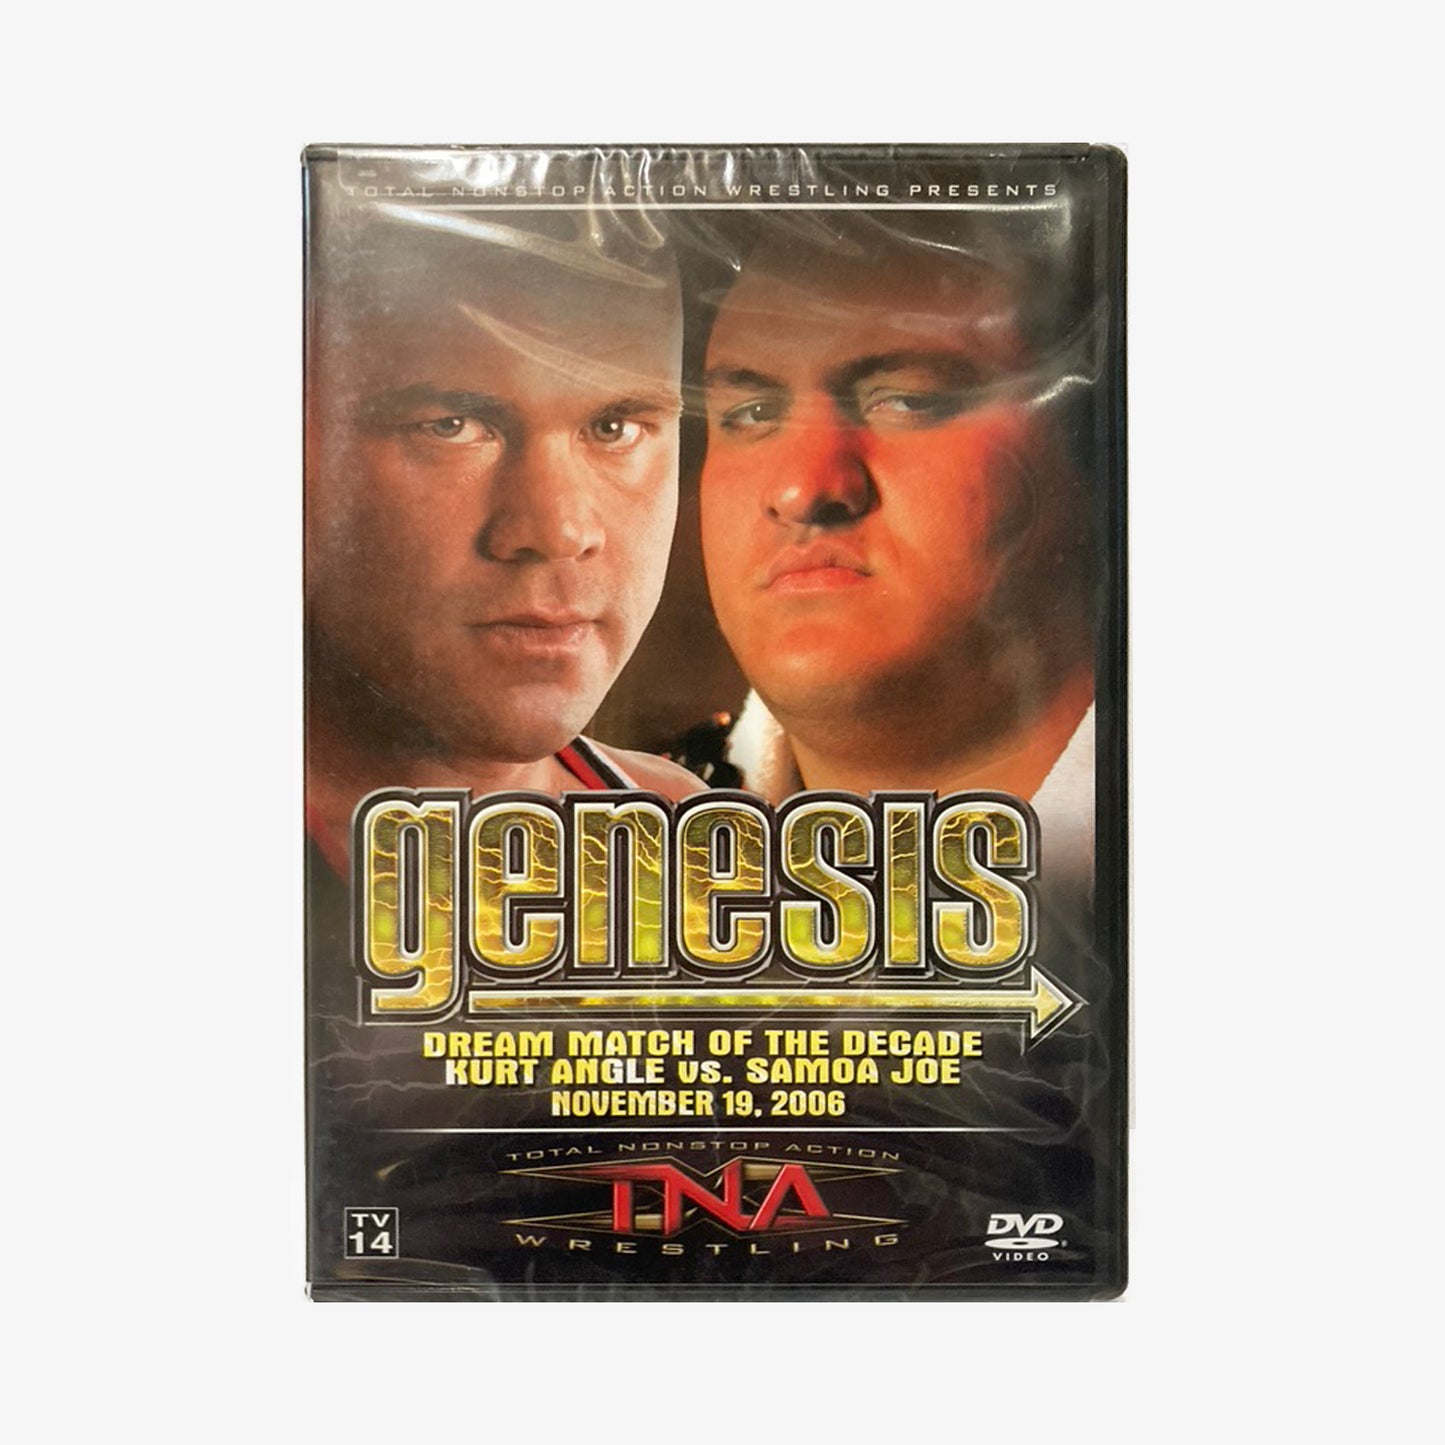 Genesis 2006